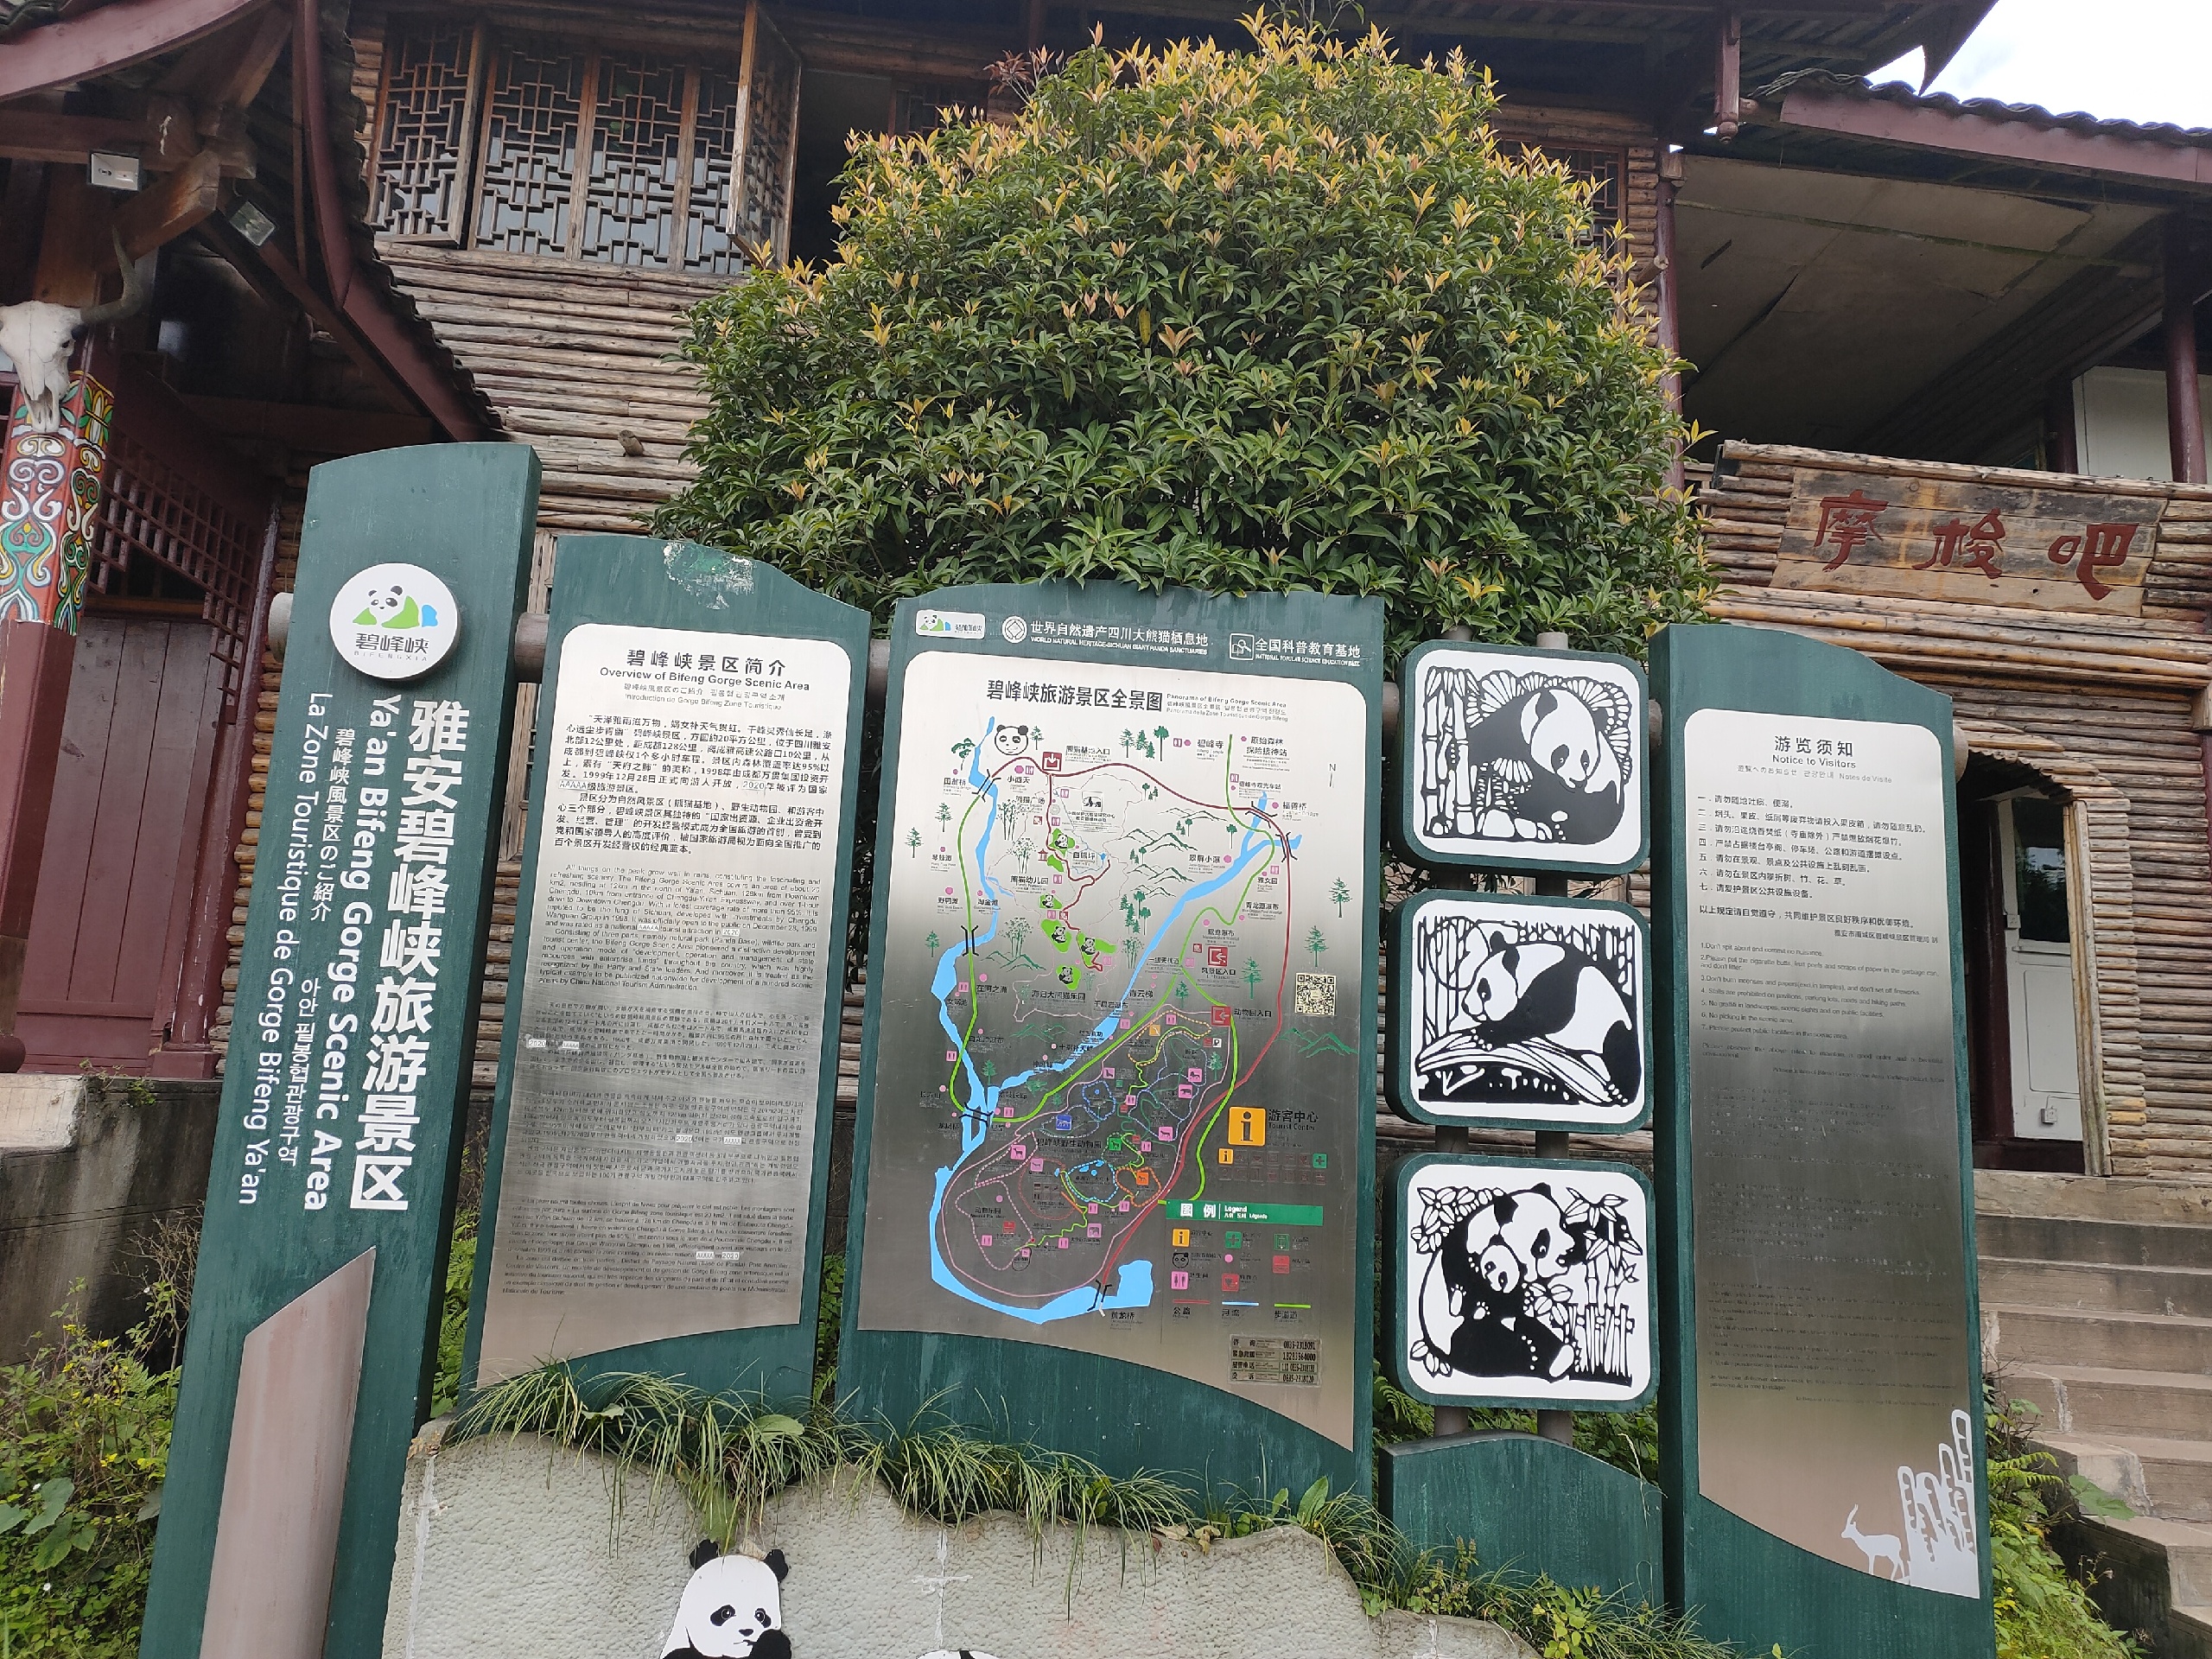 自驾游碧峰峡之旅一日游 车直接开到景区门口